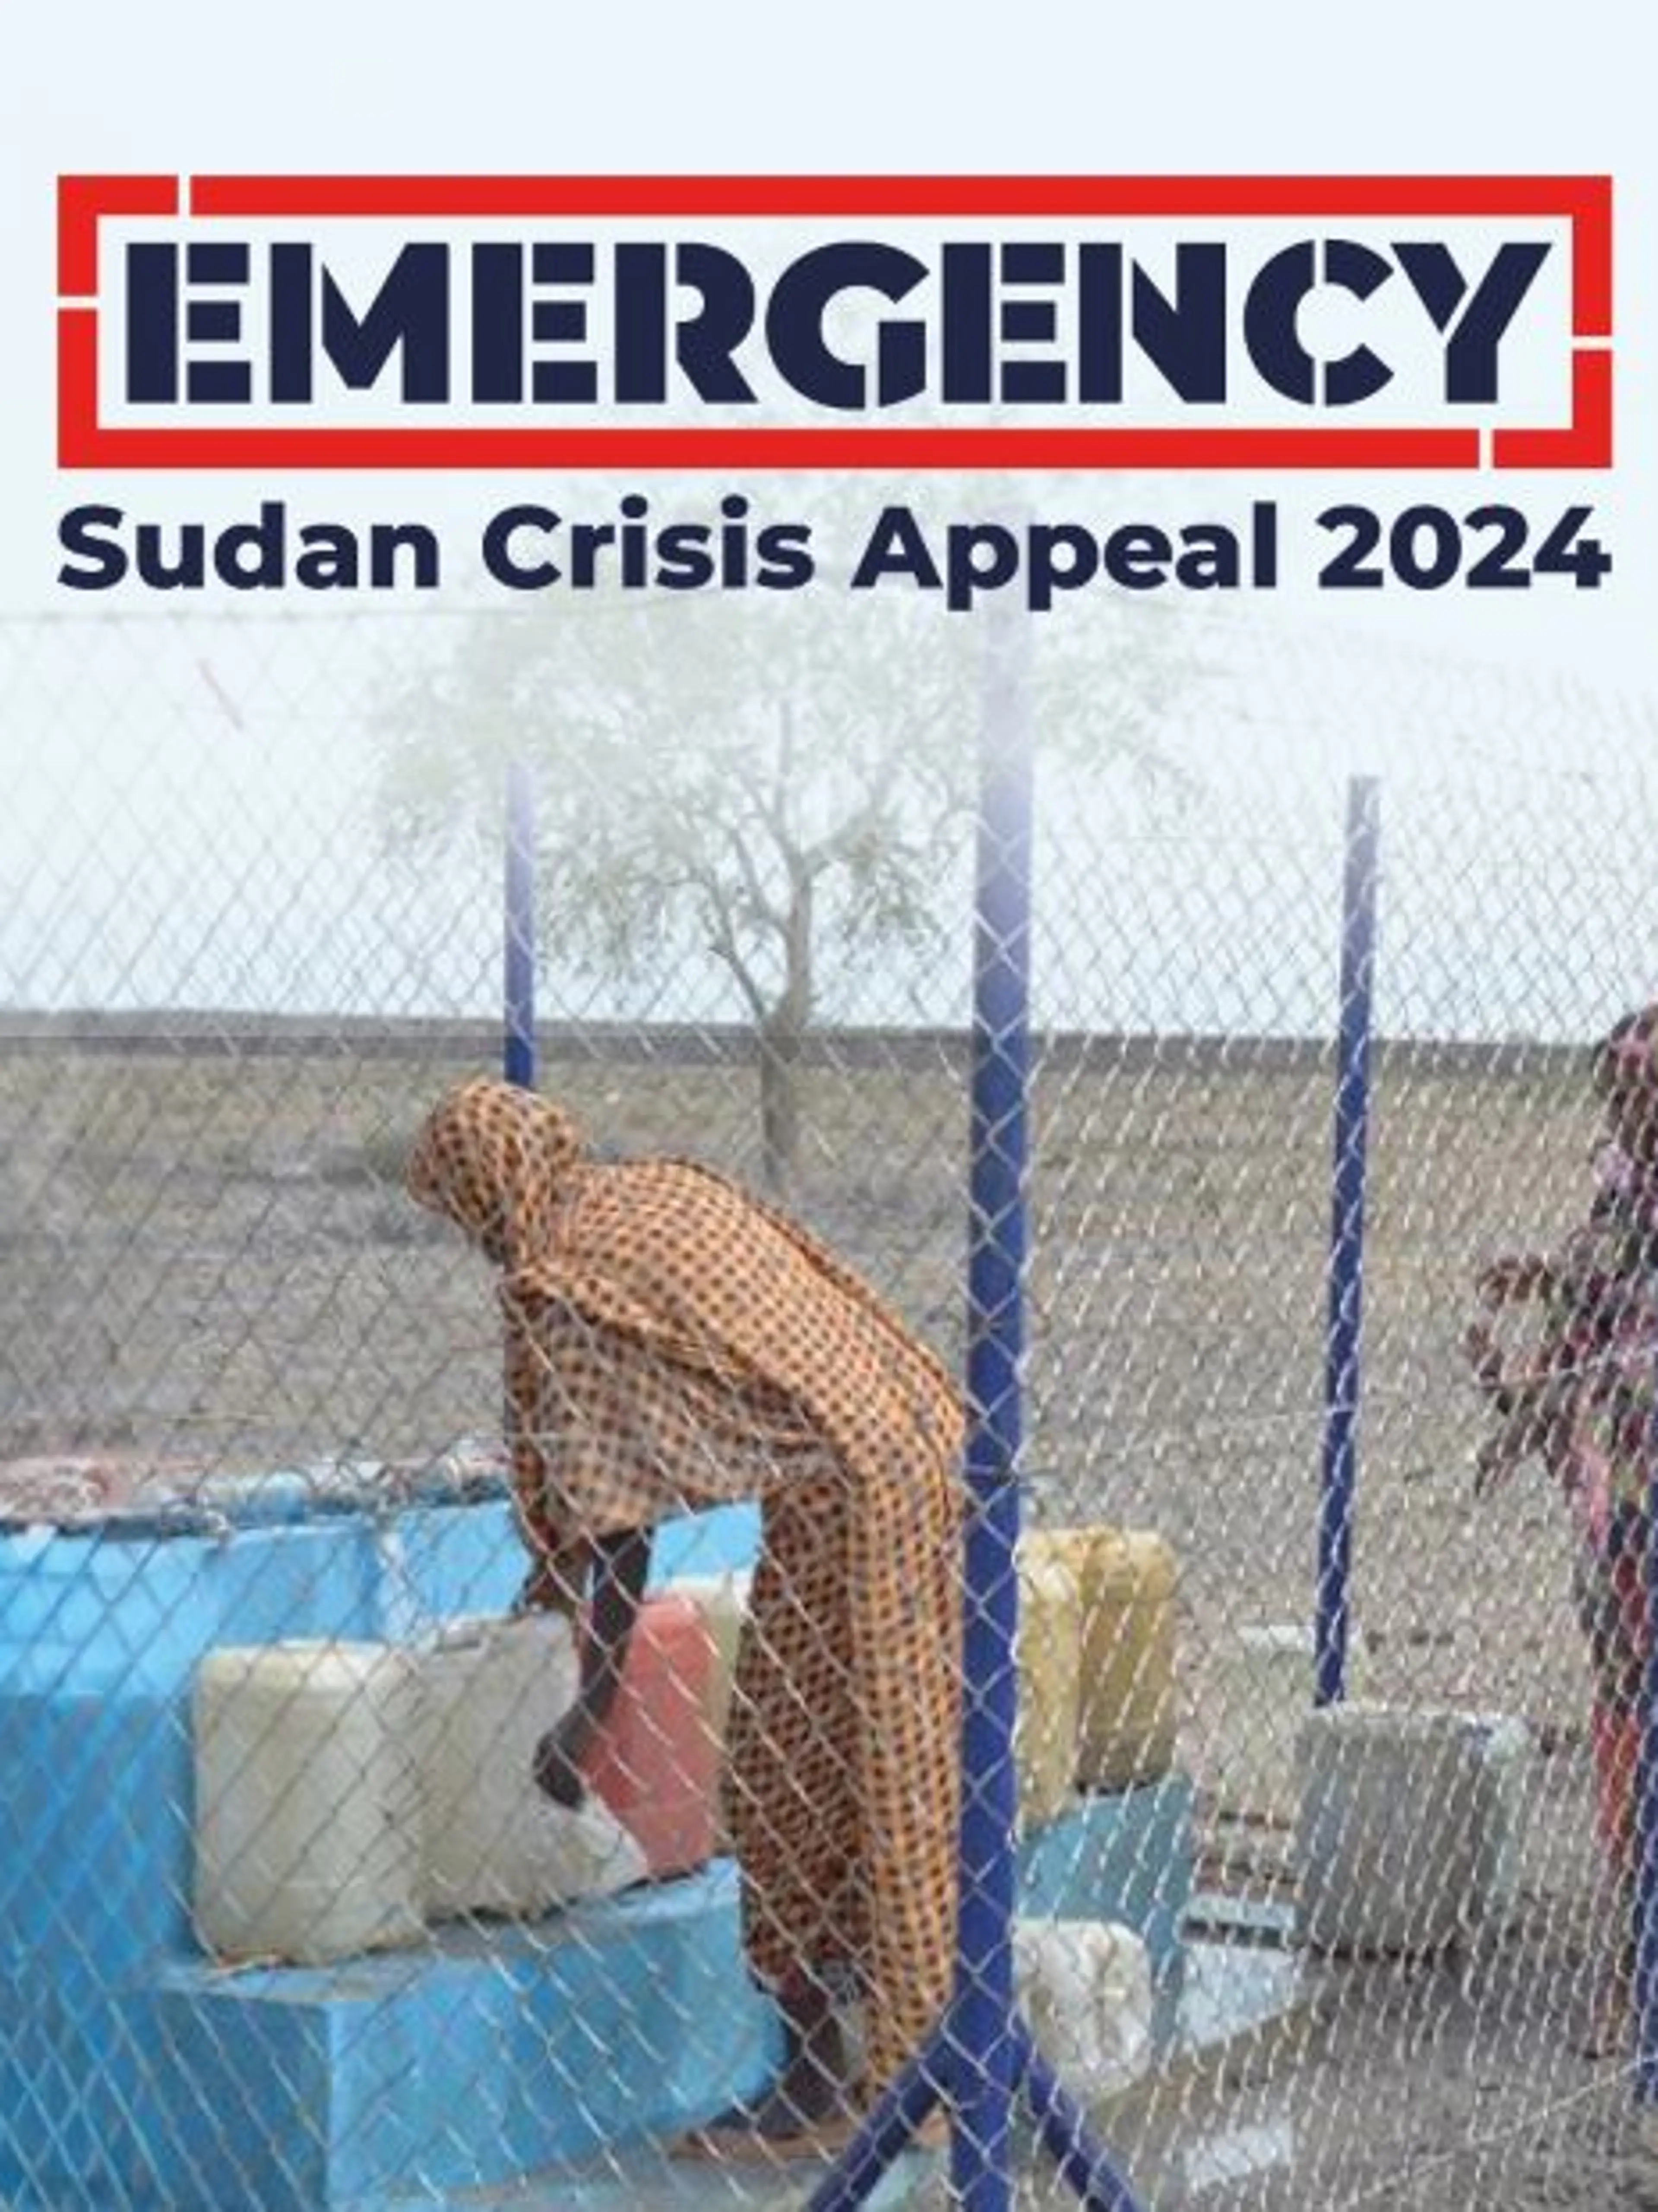 Sudan Crisis Appeal